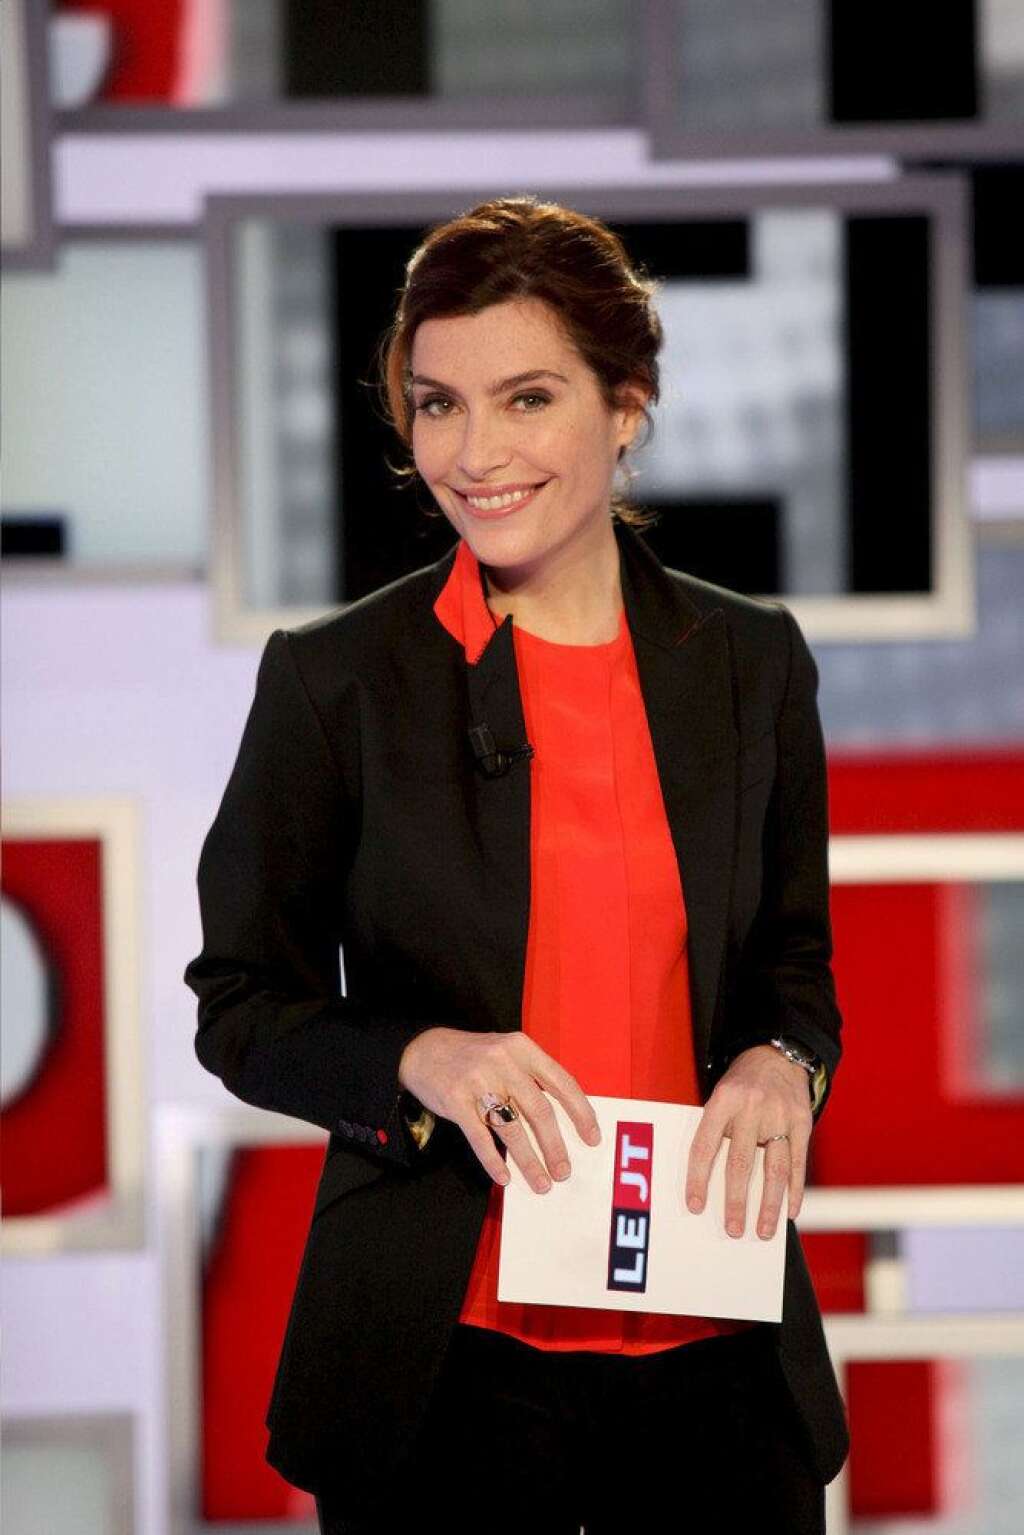 Daphné Roulier sur France 2 - Le service public s'offre les services du visage de l'info sur Canal+ et de <em>L'Effet Papillon</em>. Roulier doit prendre en charge un talk-show quotidien à 18h15 selon l'Express.